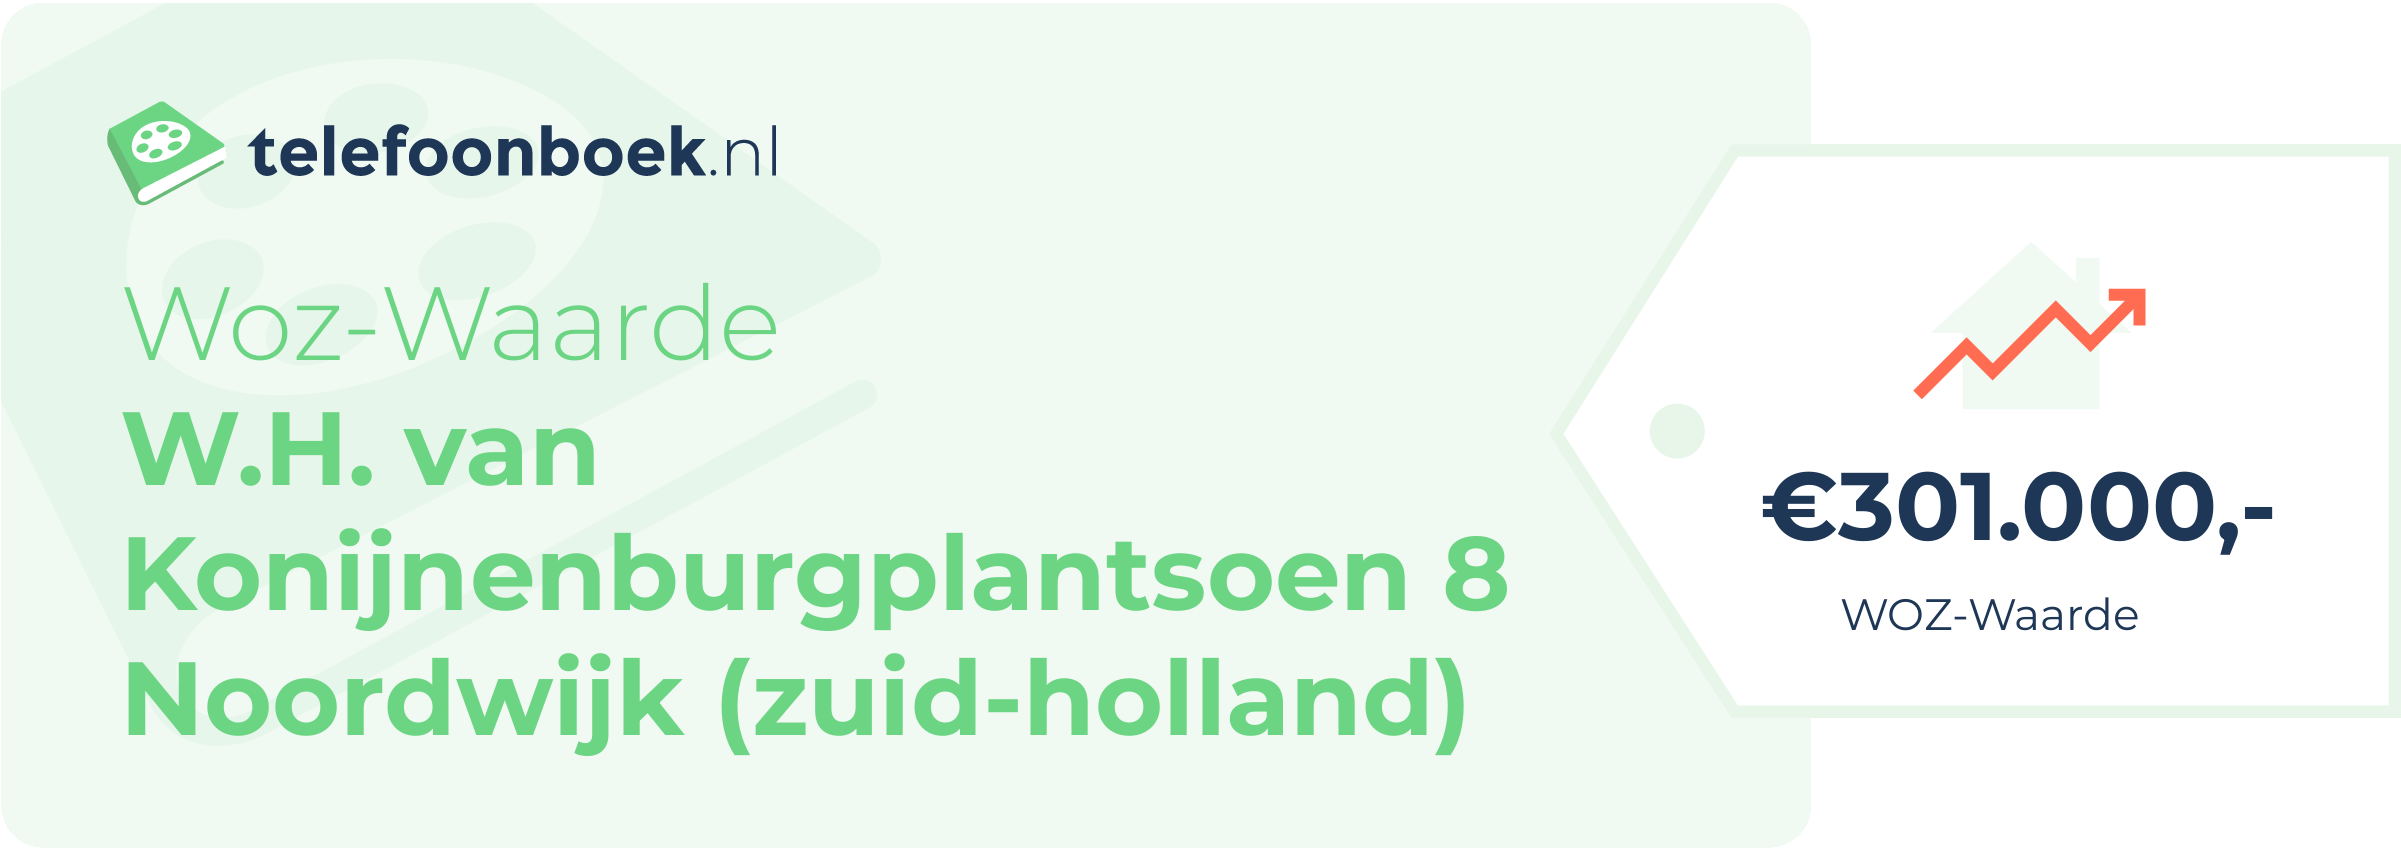 WOZ-waarde W.H. Van Konijnenburgplantsoen 8 Noordwijk (Zuid-Holland)